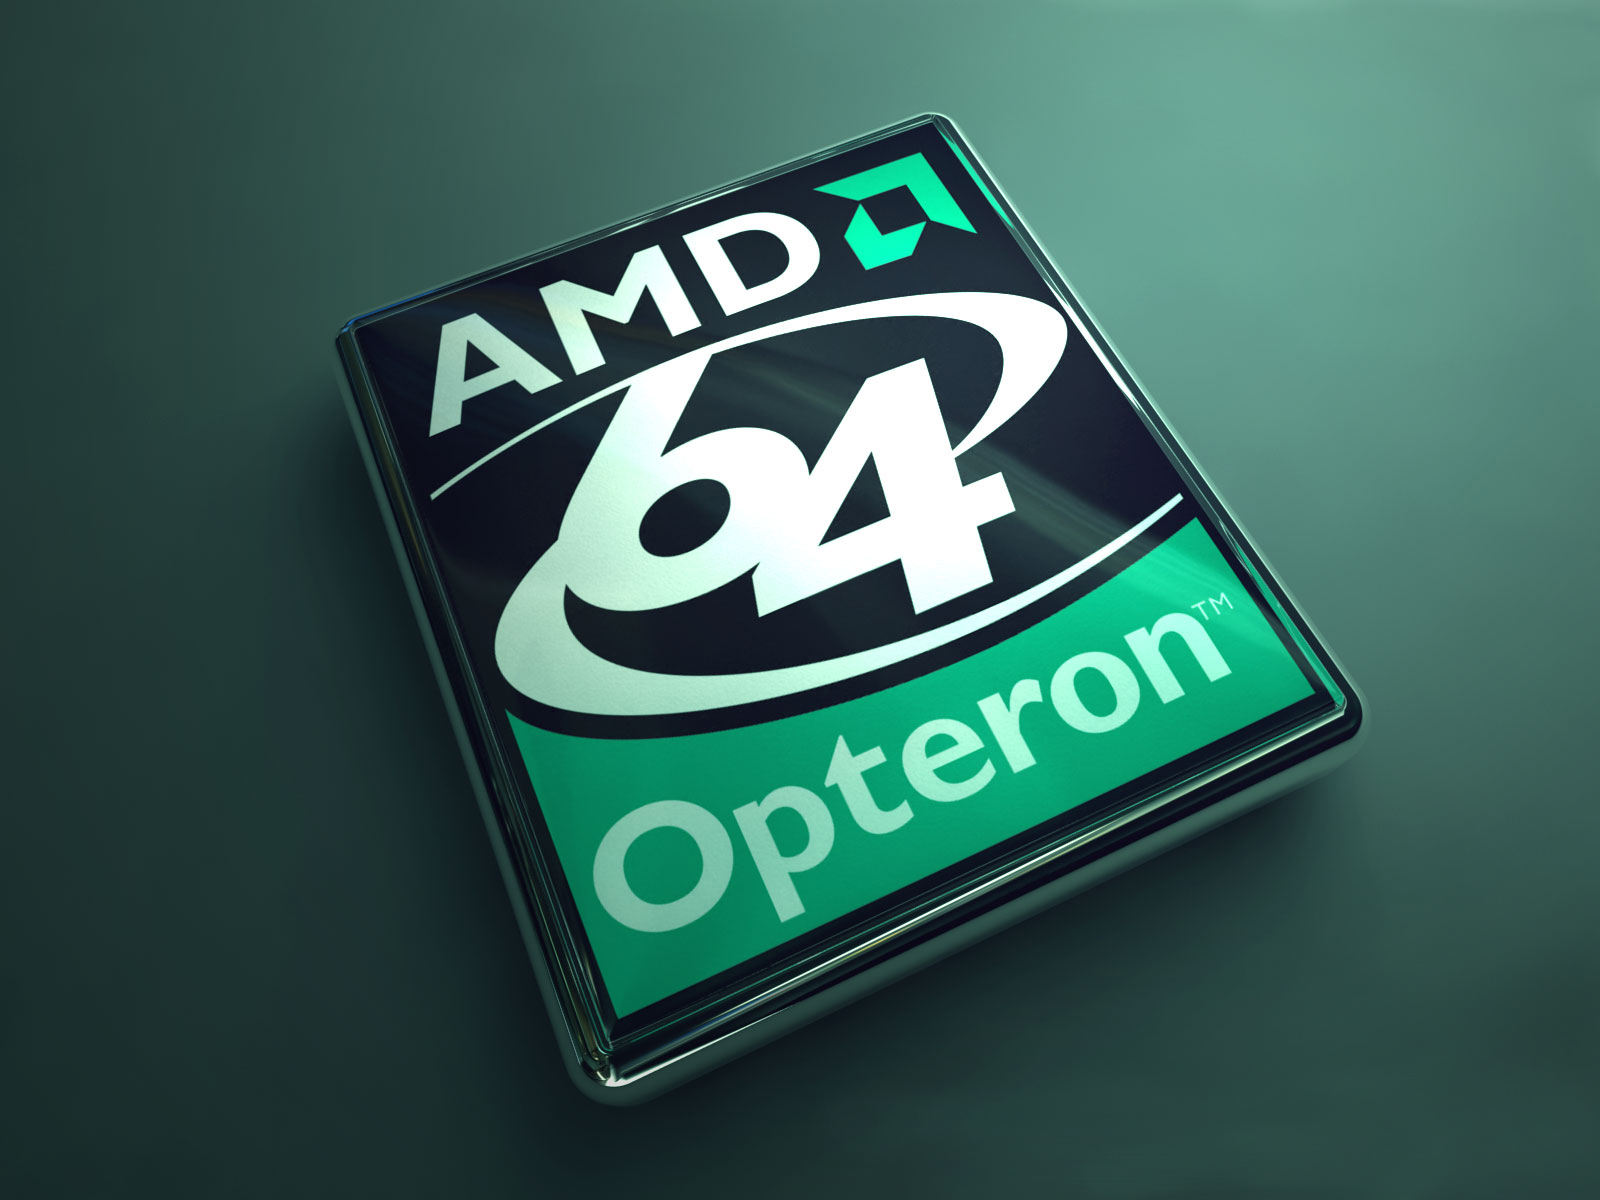 Amd 64 Opteron